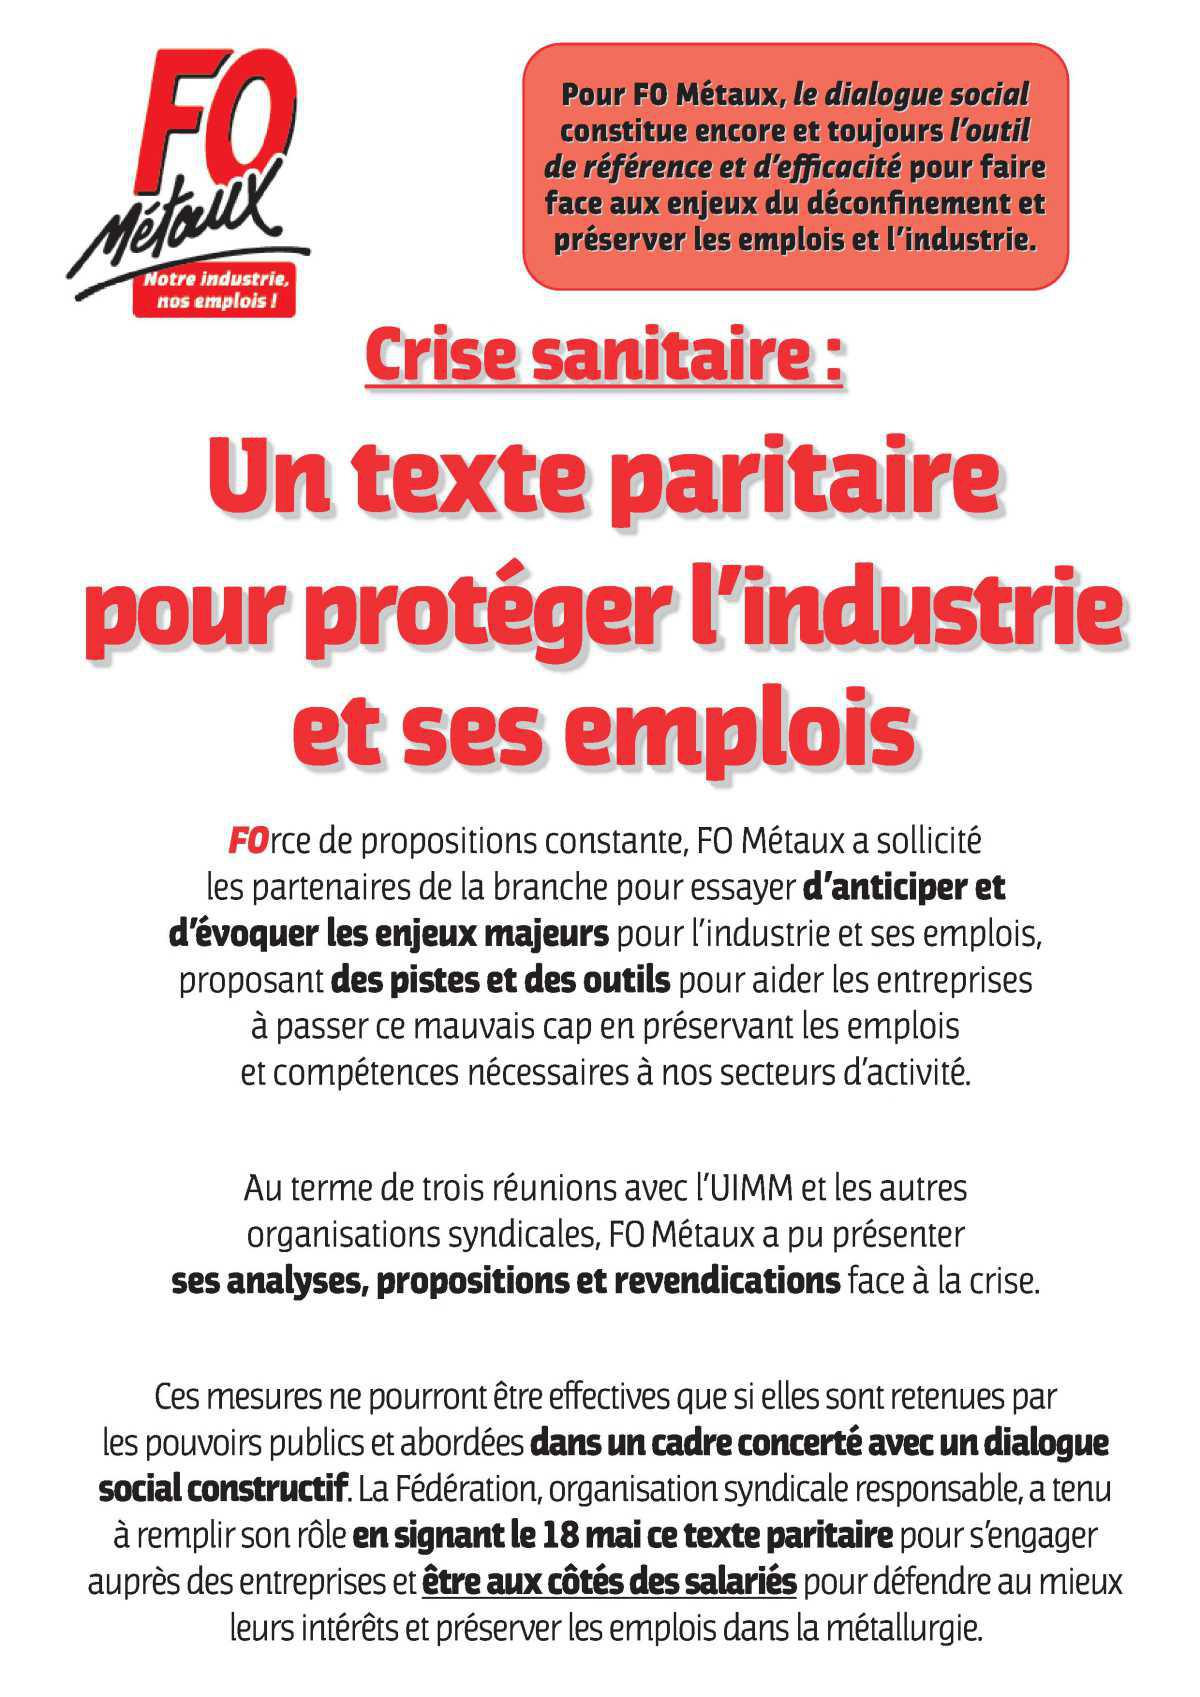 Crise sanitaire : un texte paritaire pour sauver pour protéger l'industrie et ses emplois